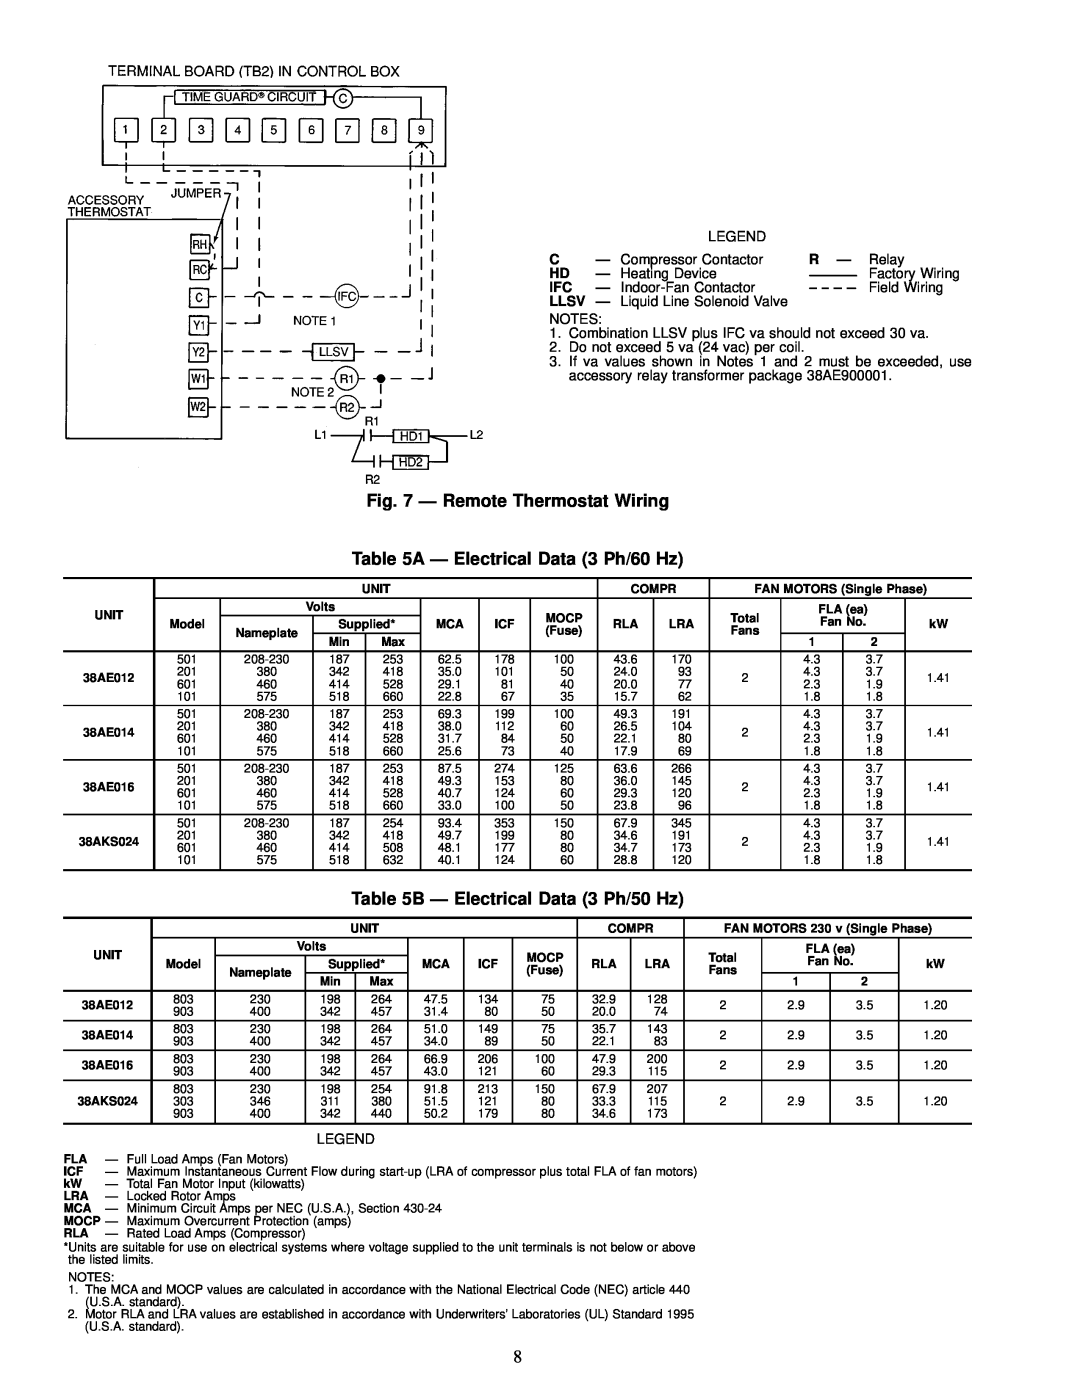 Carrier 38AE014 Ð Remote Thermostat Wiring, A Ð Electrical Data 3 Ph/60 Hz, B Ð Electrical Data 3 Ph/50 Hz, Llsv Ð 